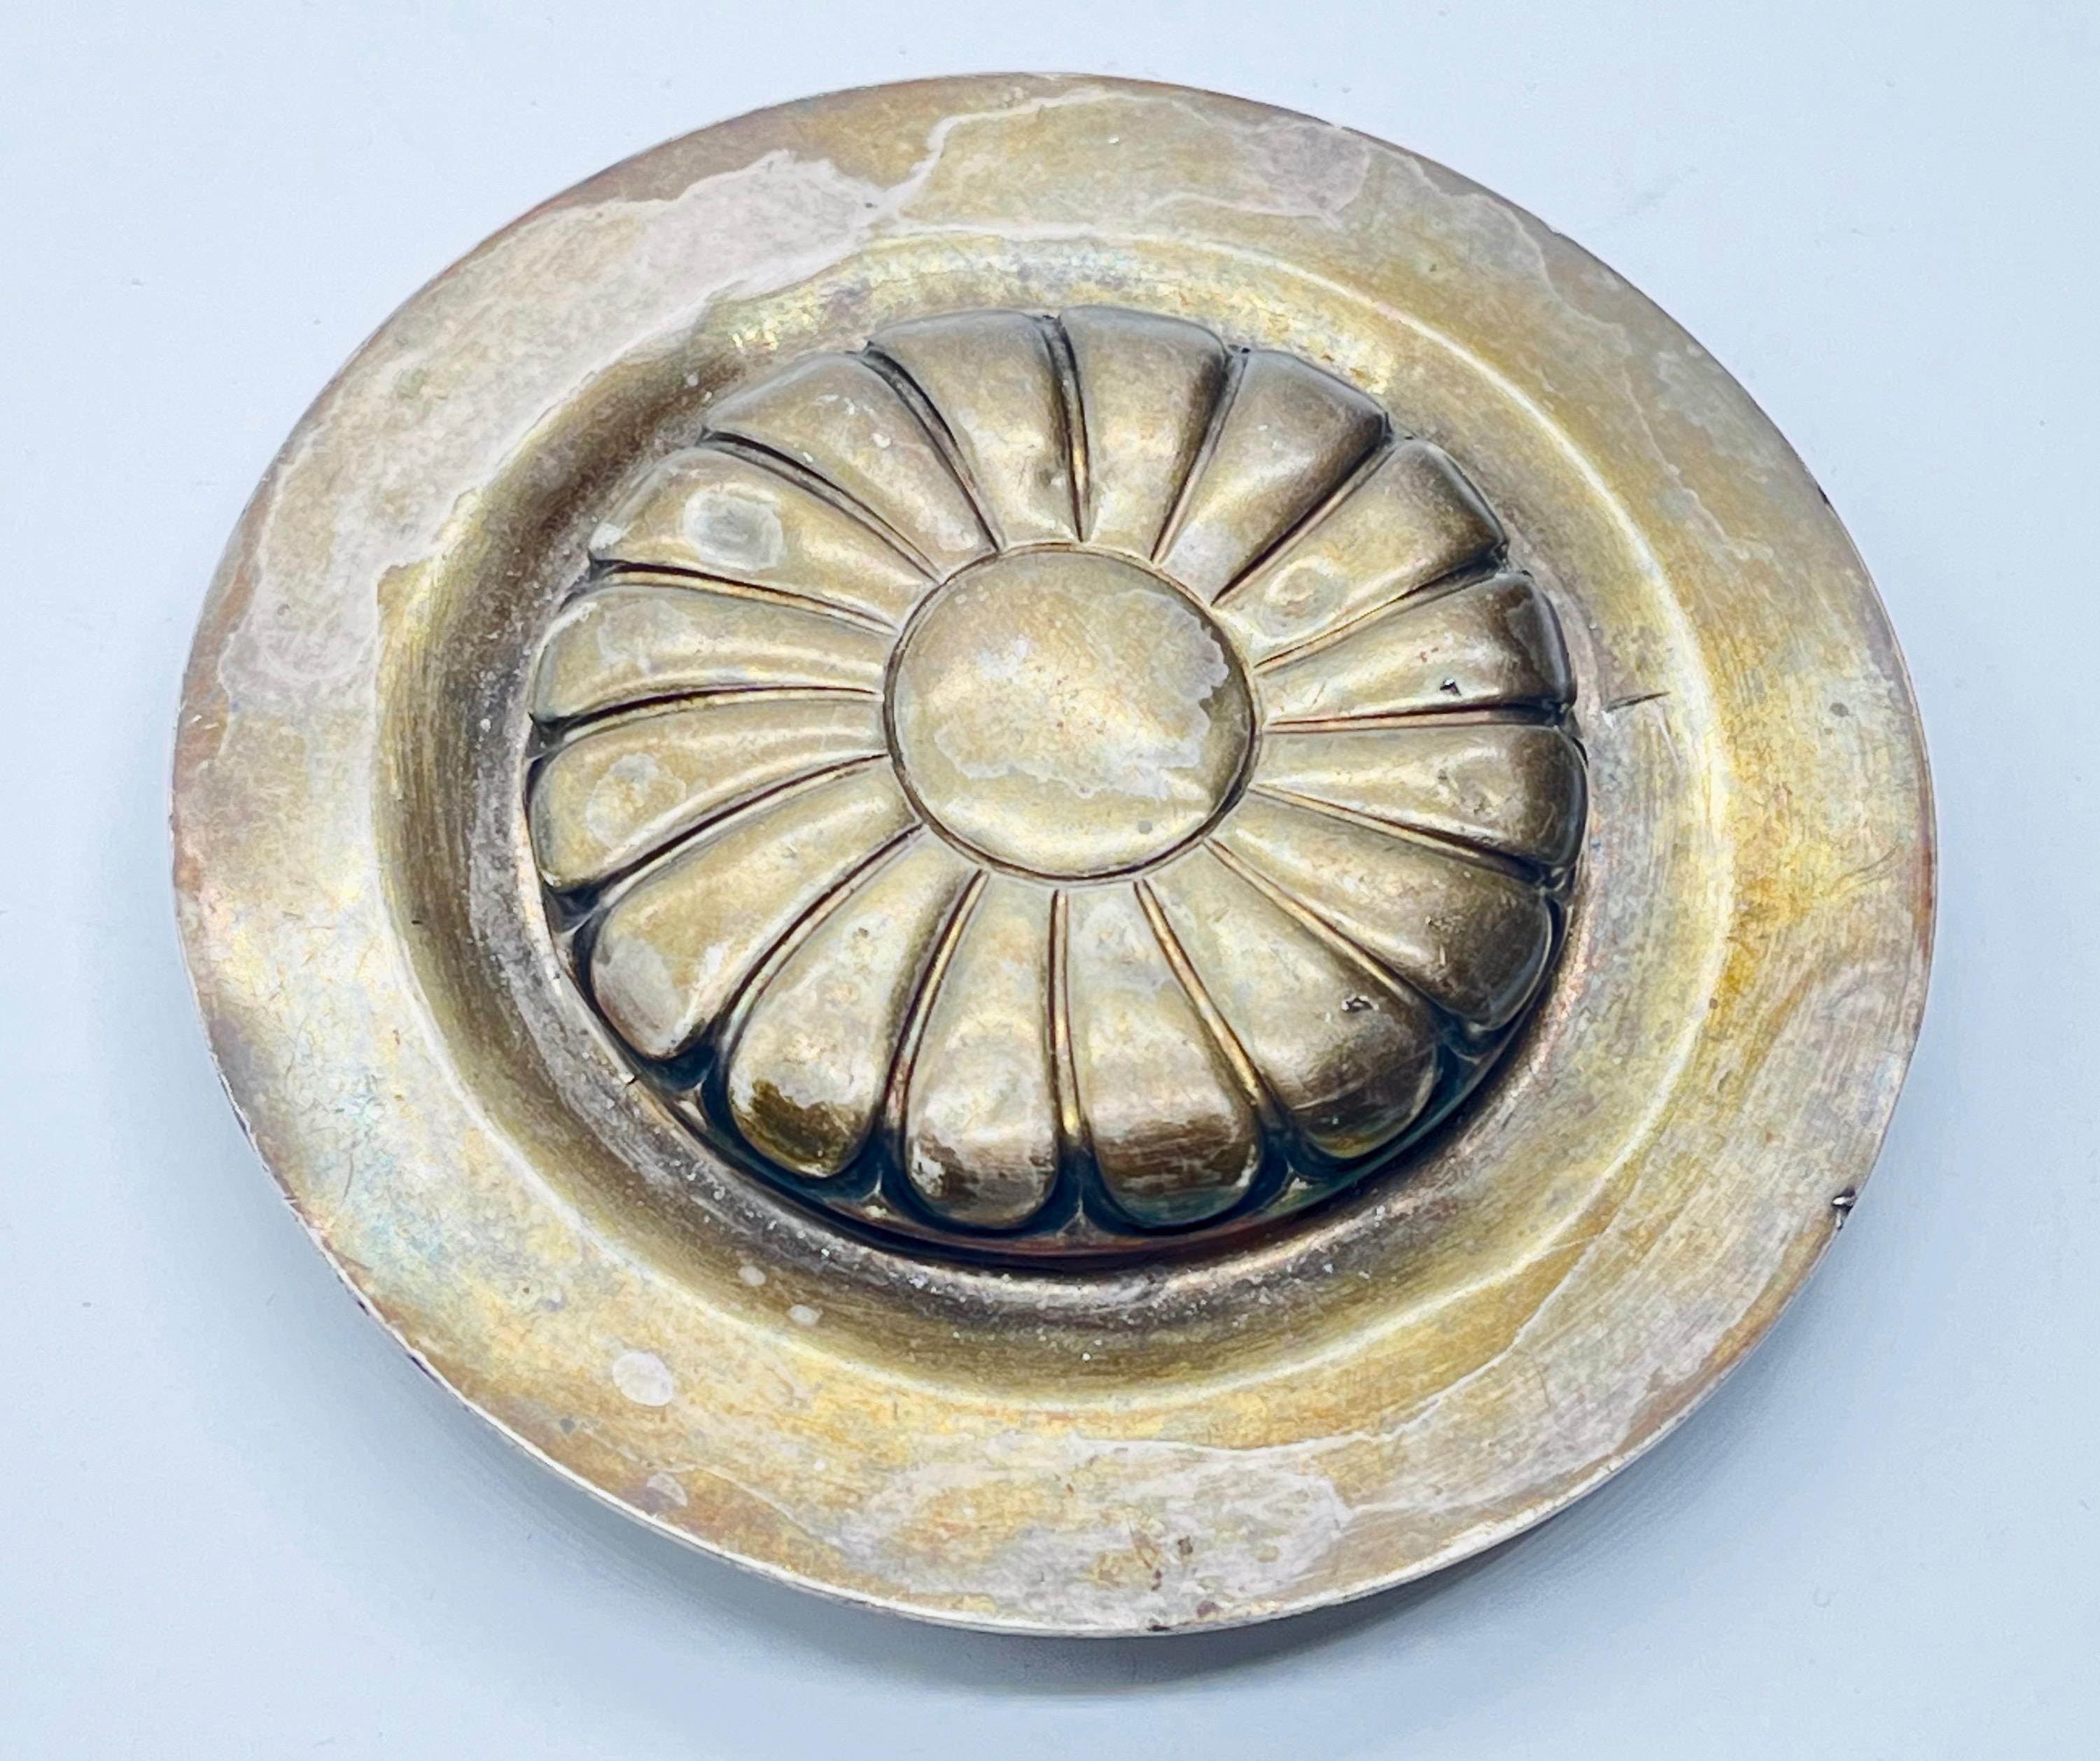 Srebrny dzbanek ze srebrną nakrywą i hebanową rękojeścią , masa 571 g